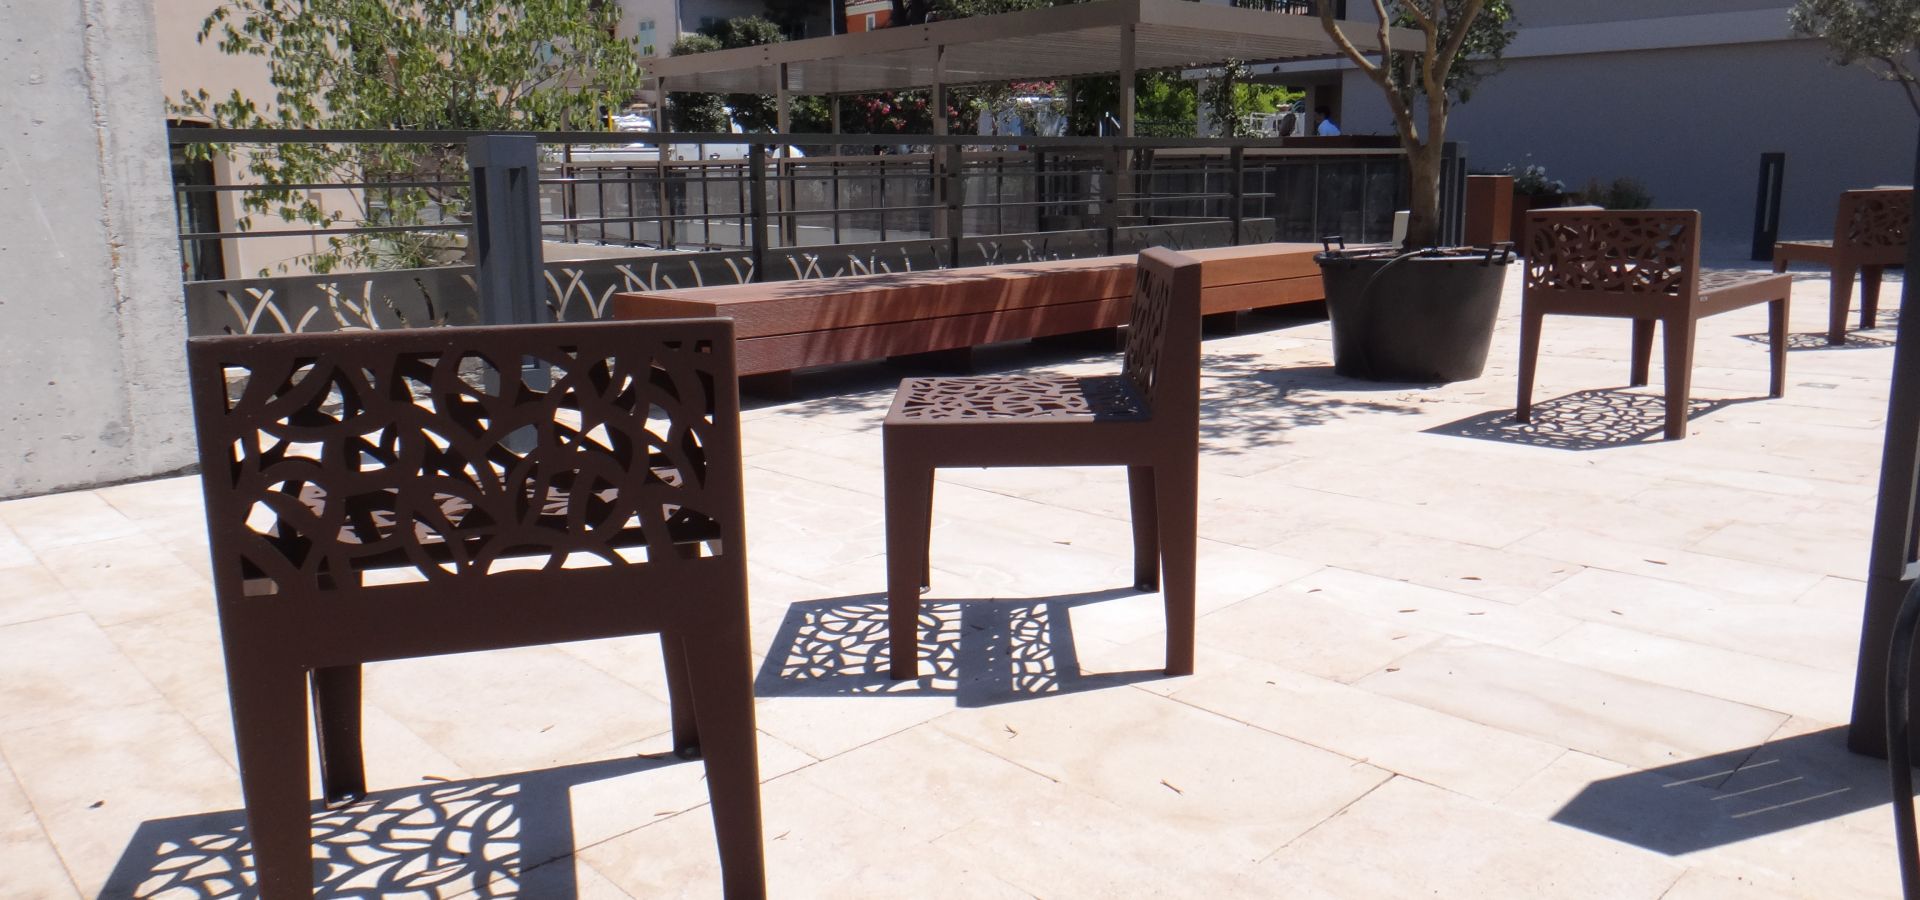 SAINT TROPEZ mobilier urbain design METALCO - banc public bois acier - corbeille rectangulaire